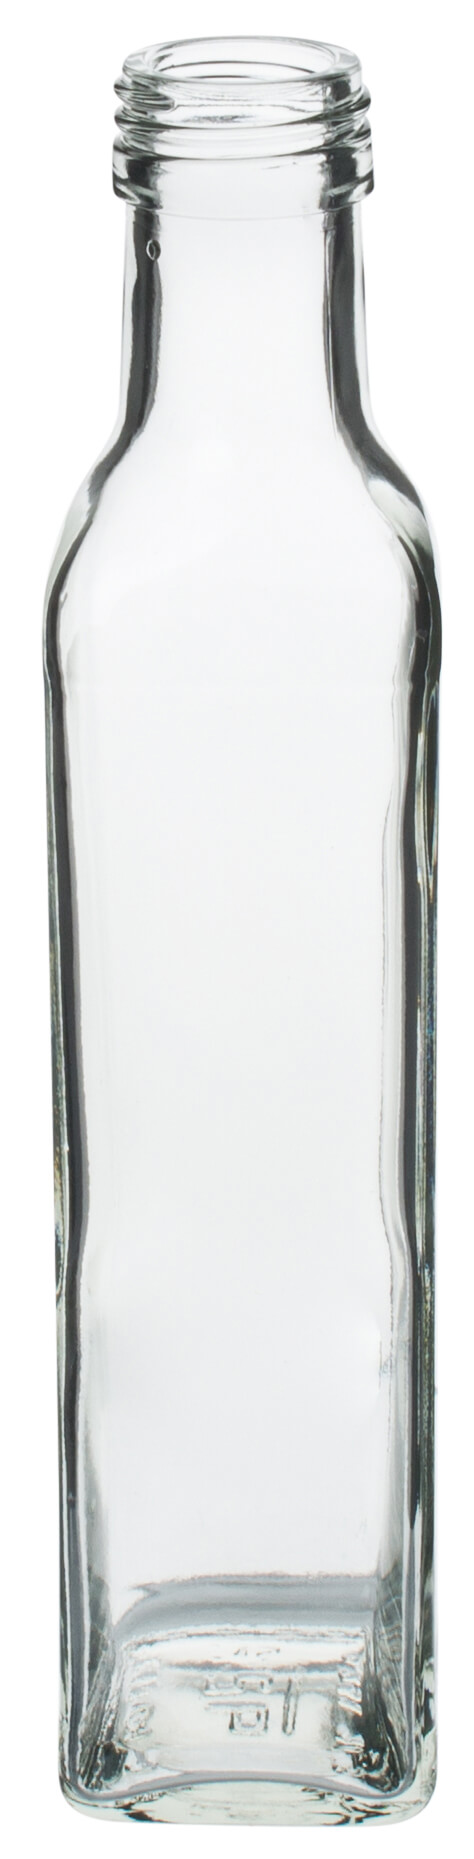 Glasflasche eckig - 250ml